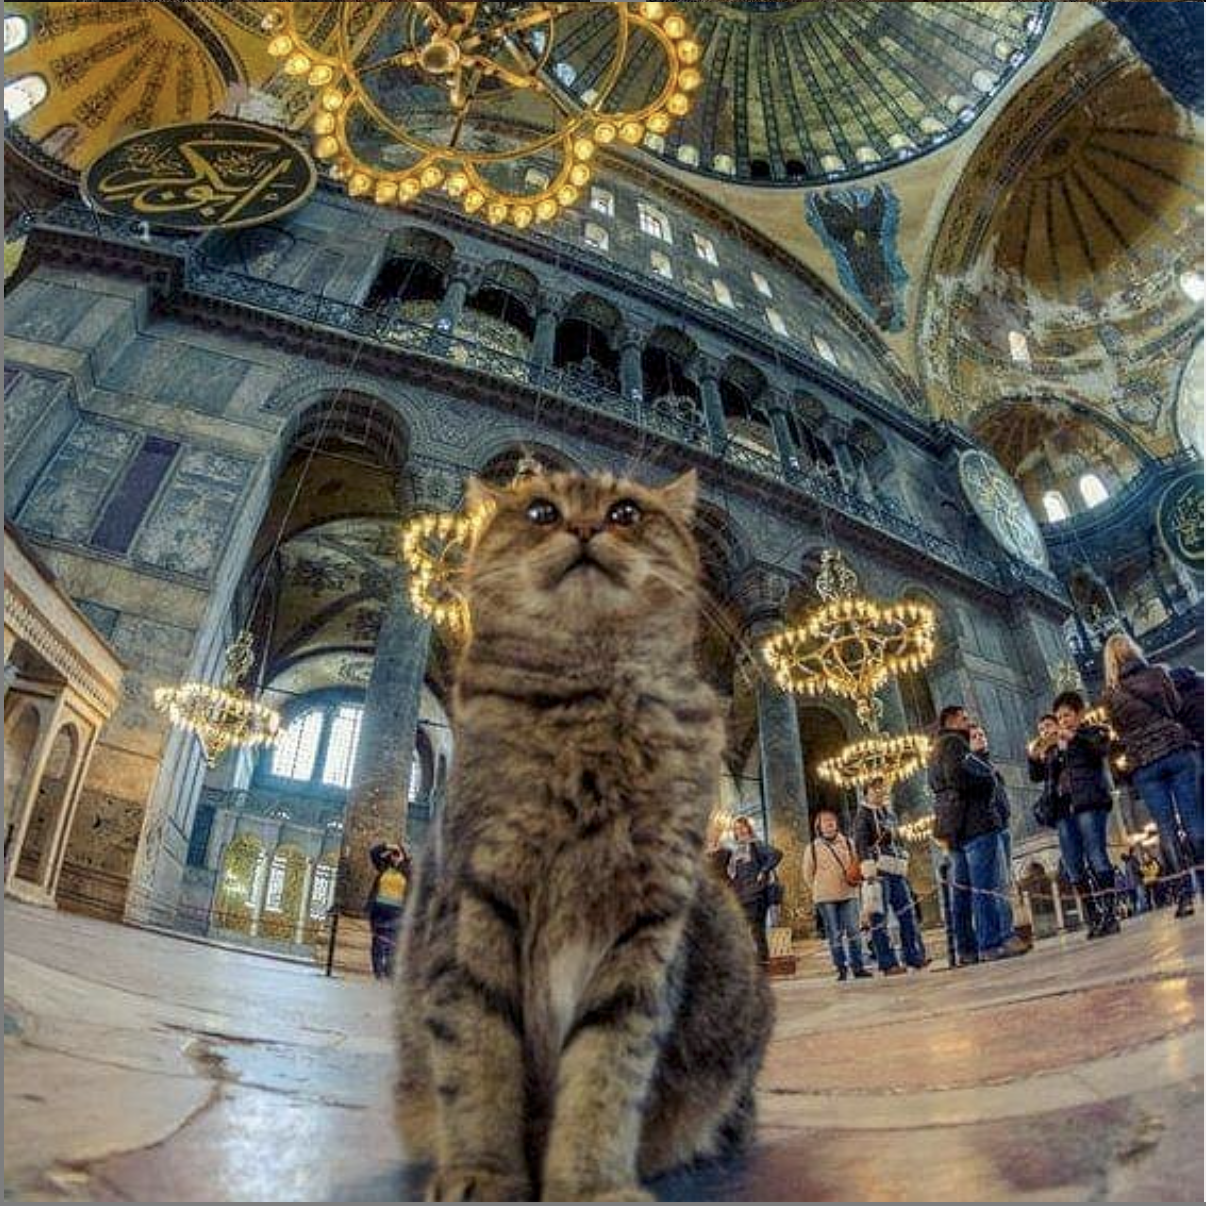 圣索菲亚大教堂的明星猫Gli出现在世界各地游客的相机镜头和社交媒体中